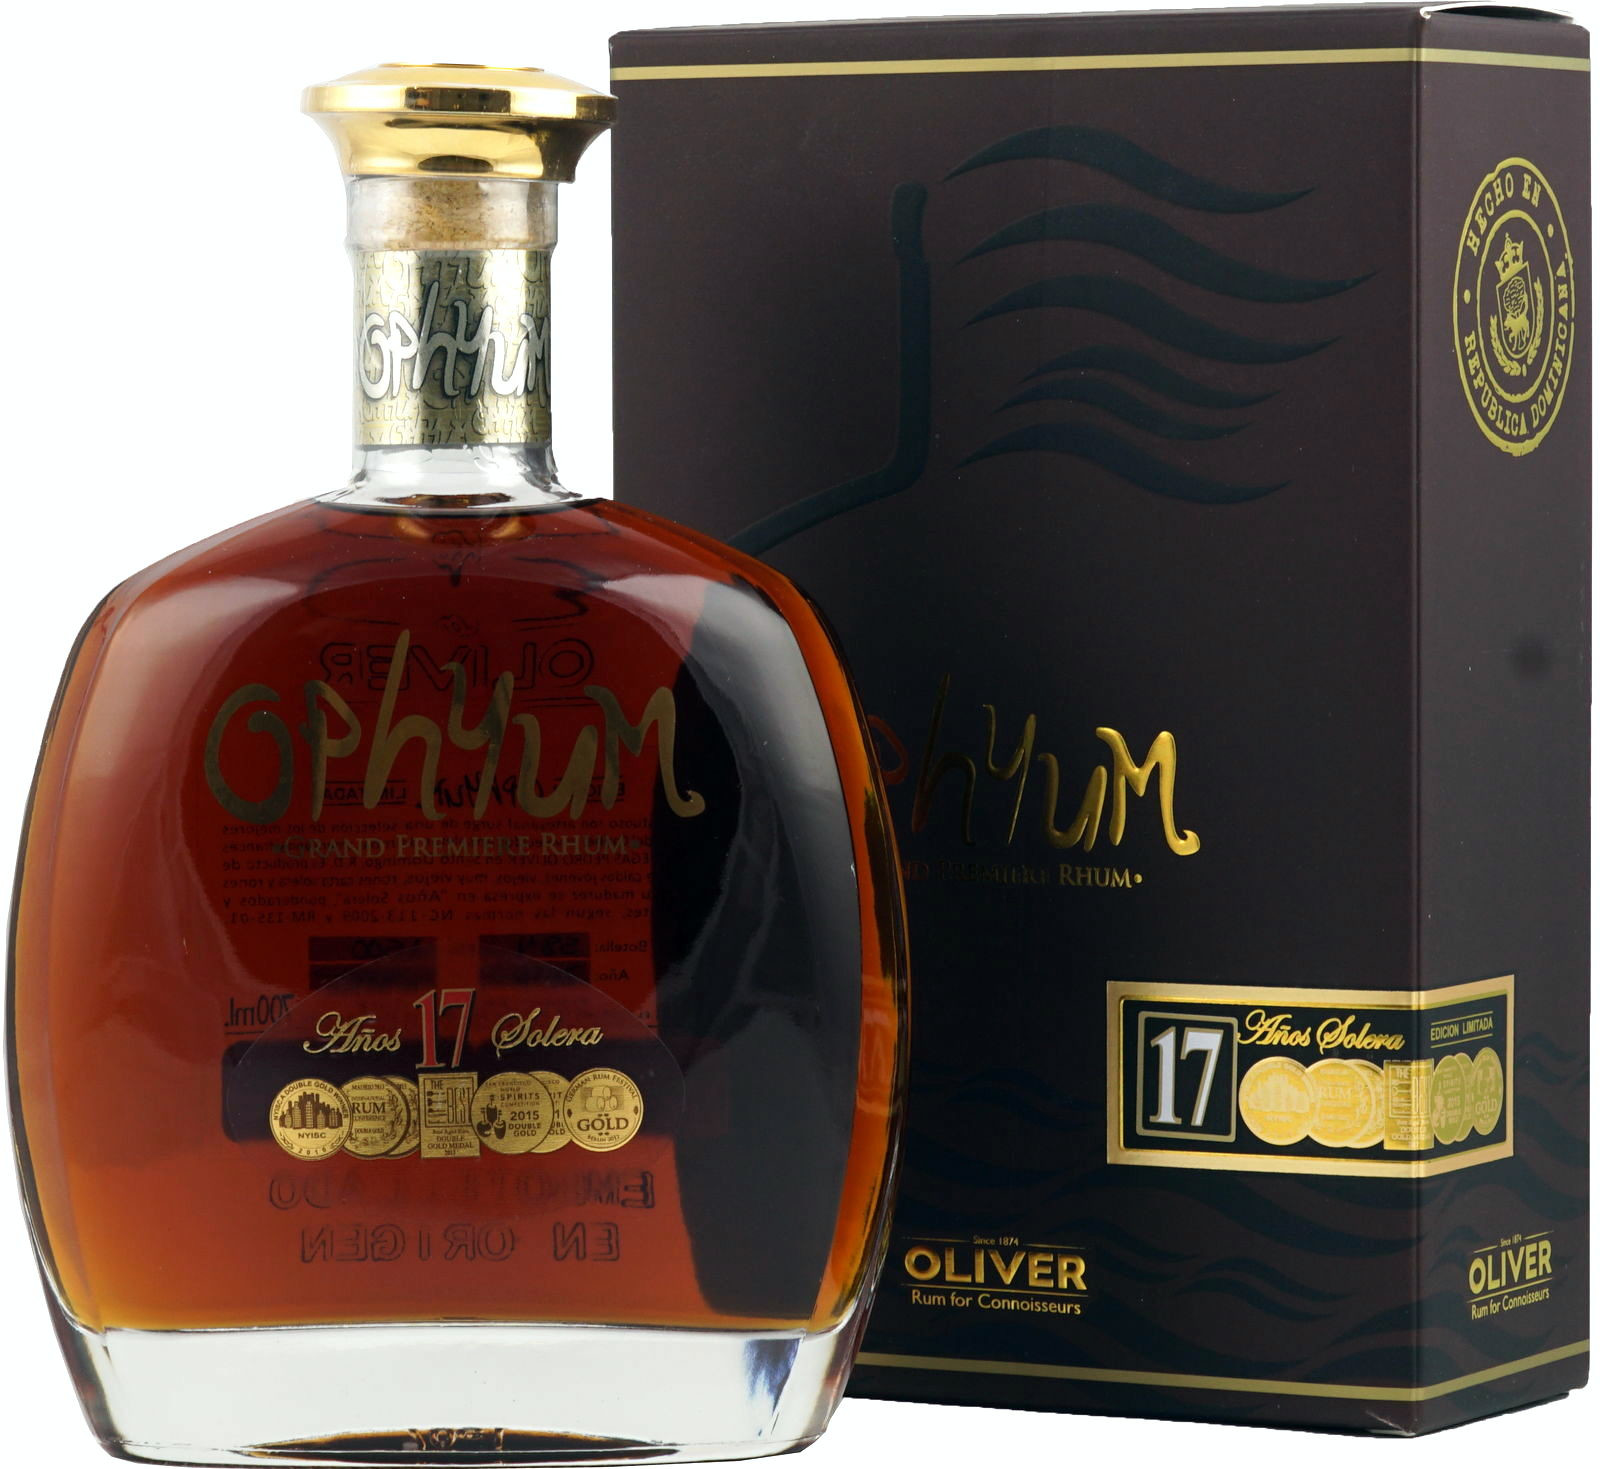 Ophyum 17 éves Rum 0.7l